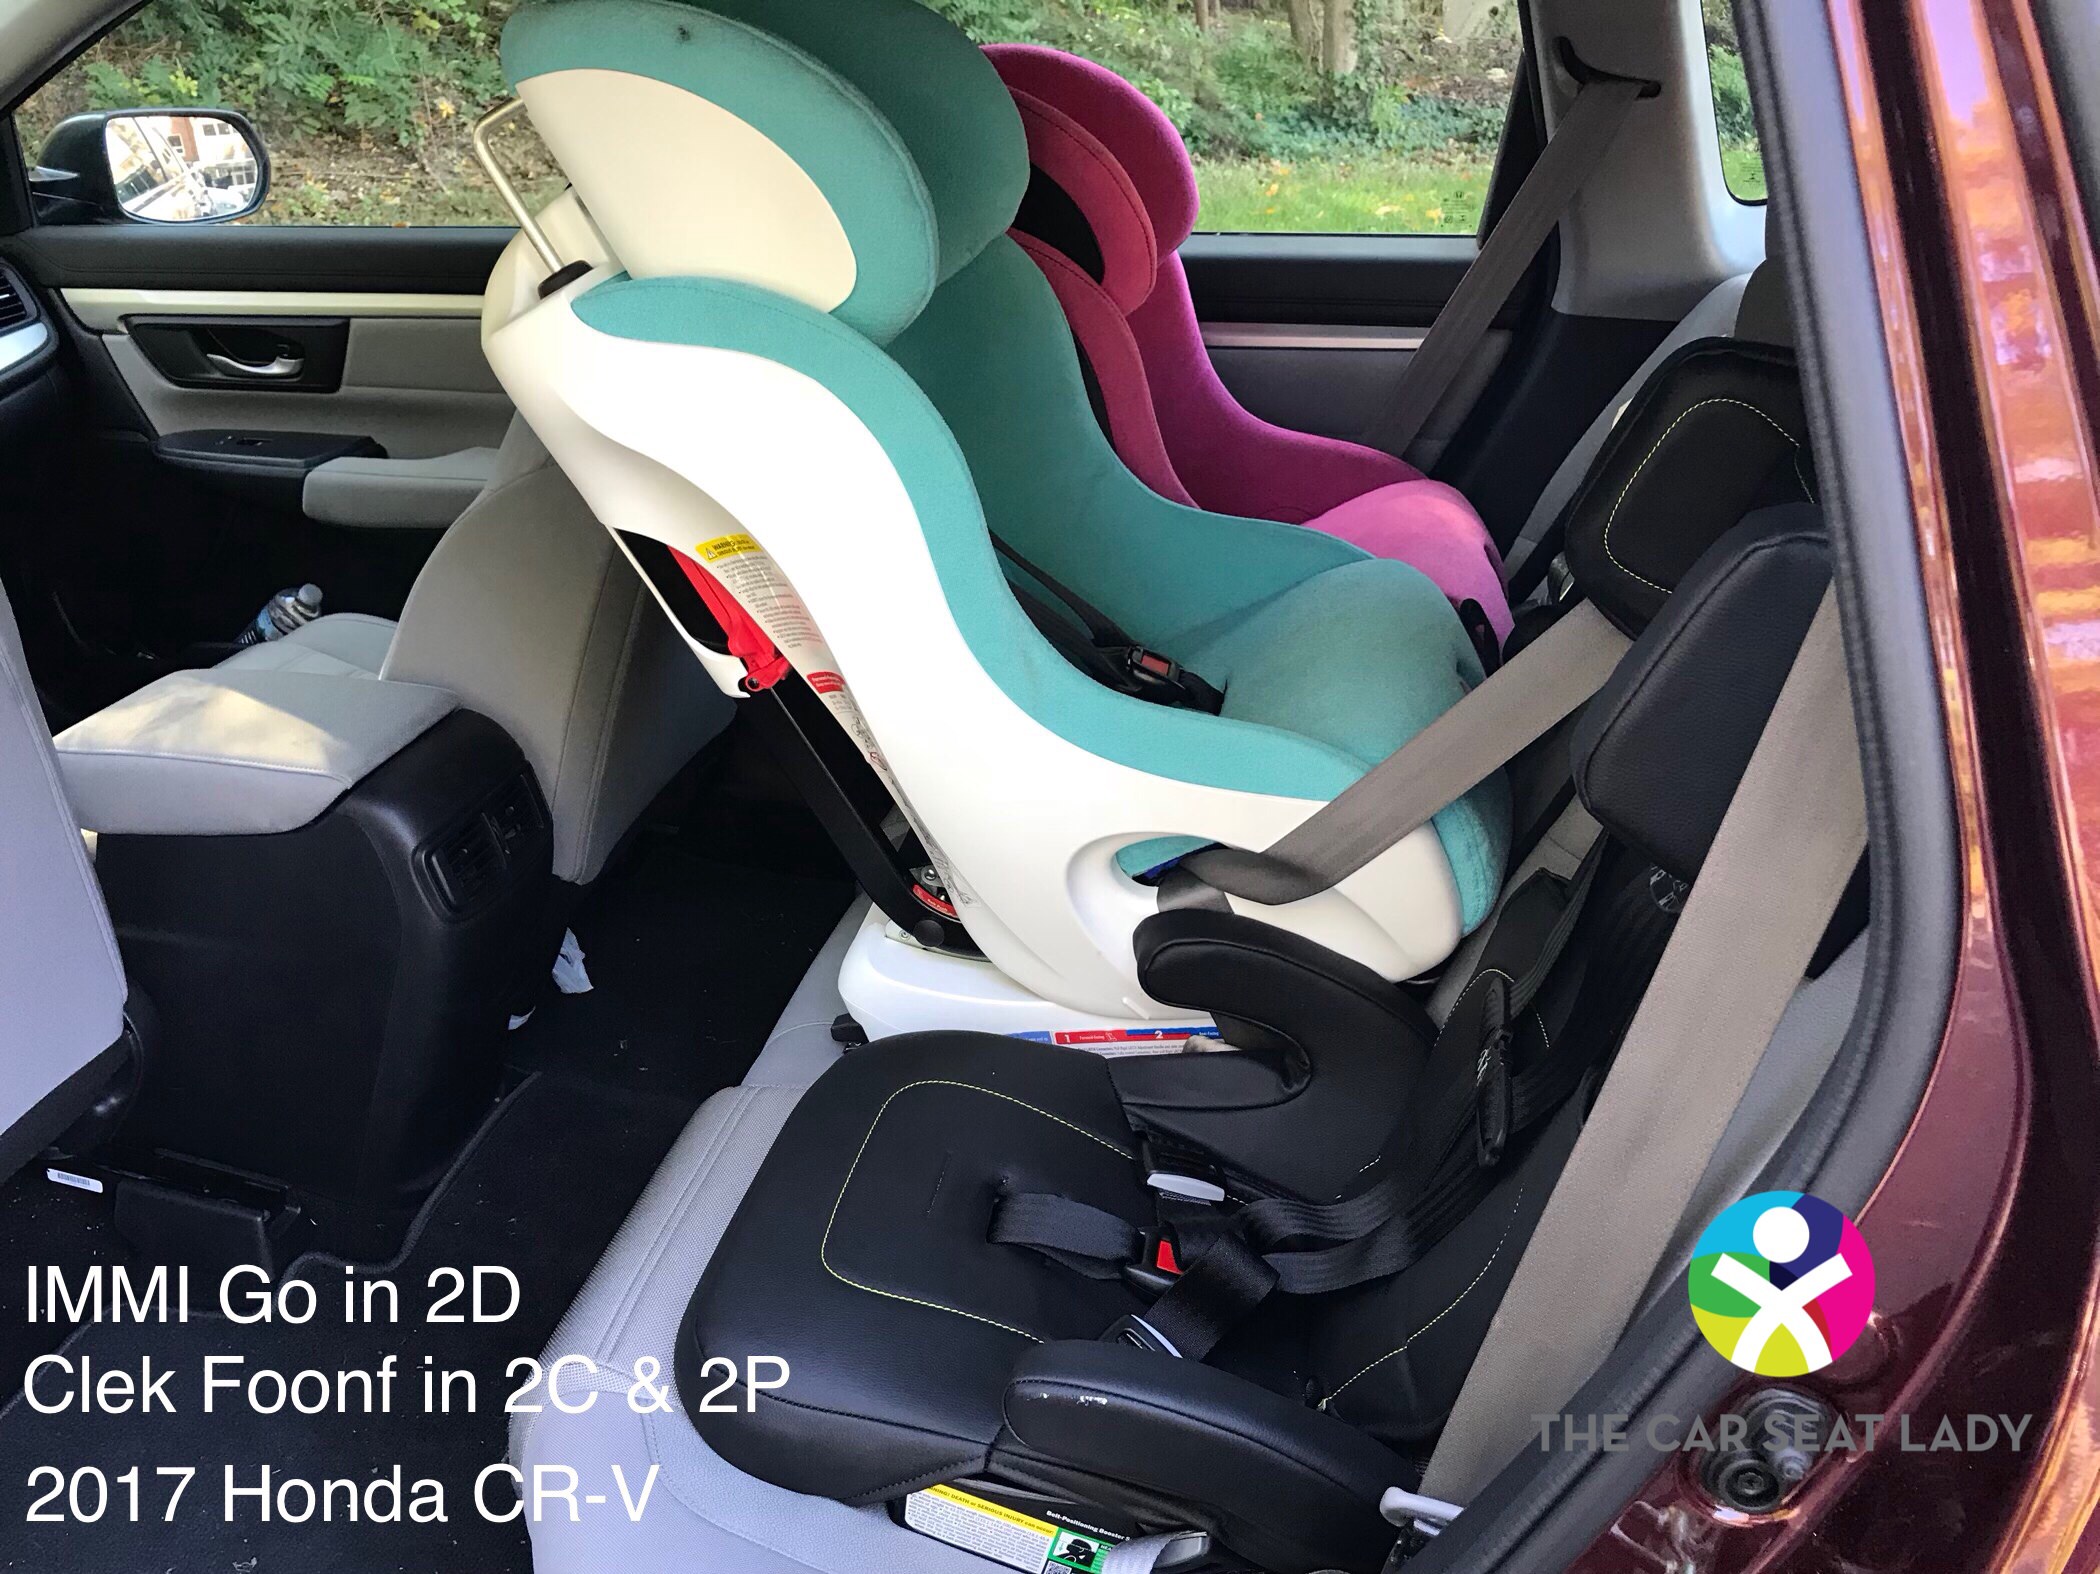 The Car Seat Lady Honda CRV